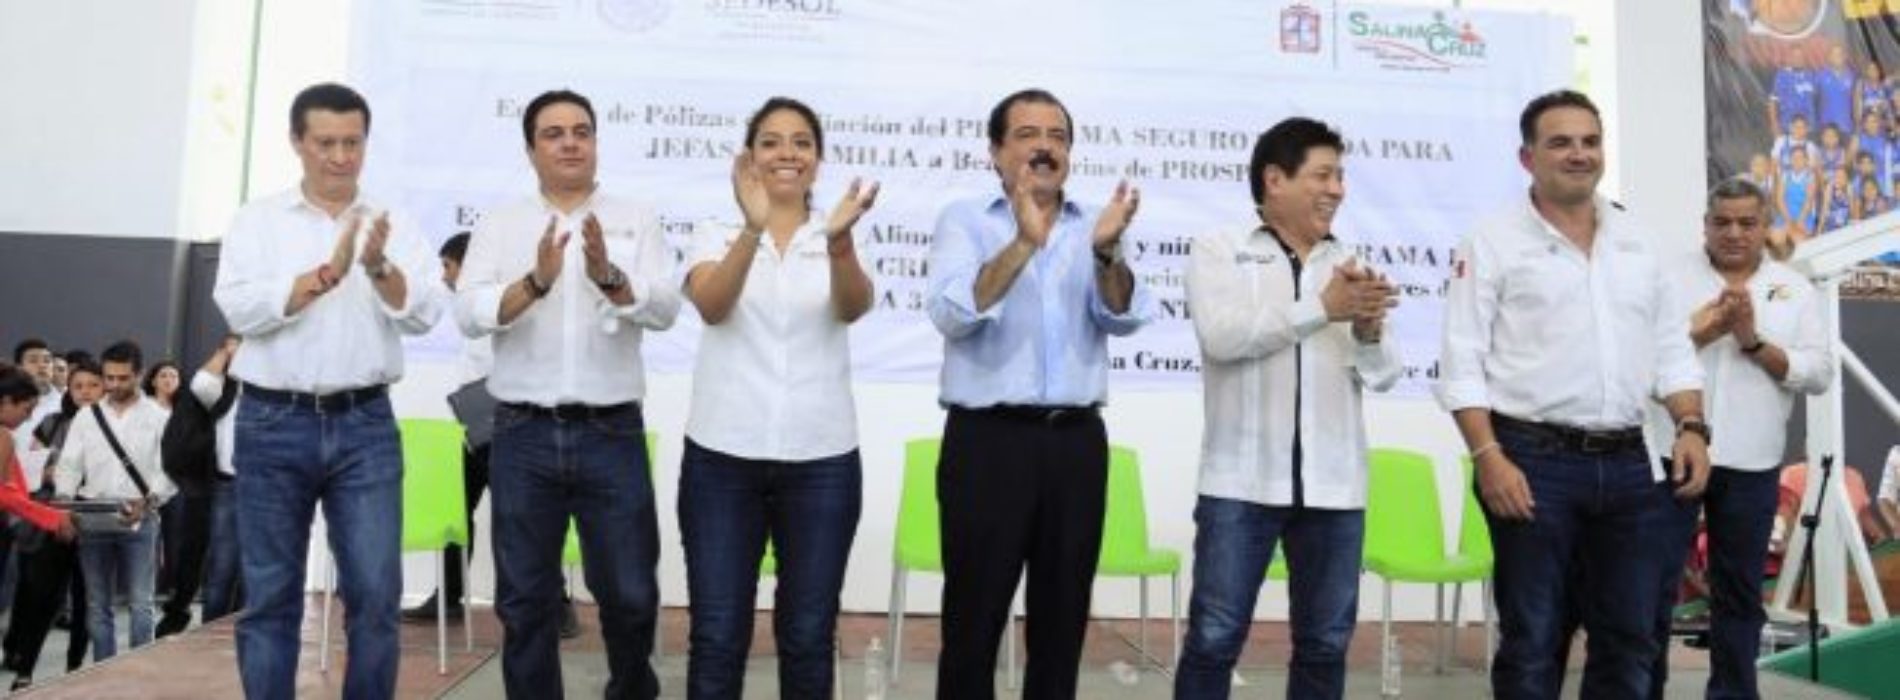 Juntos seguiremos construyendo un mejor Oaxaca:
Sedesoh